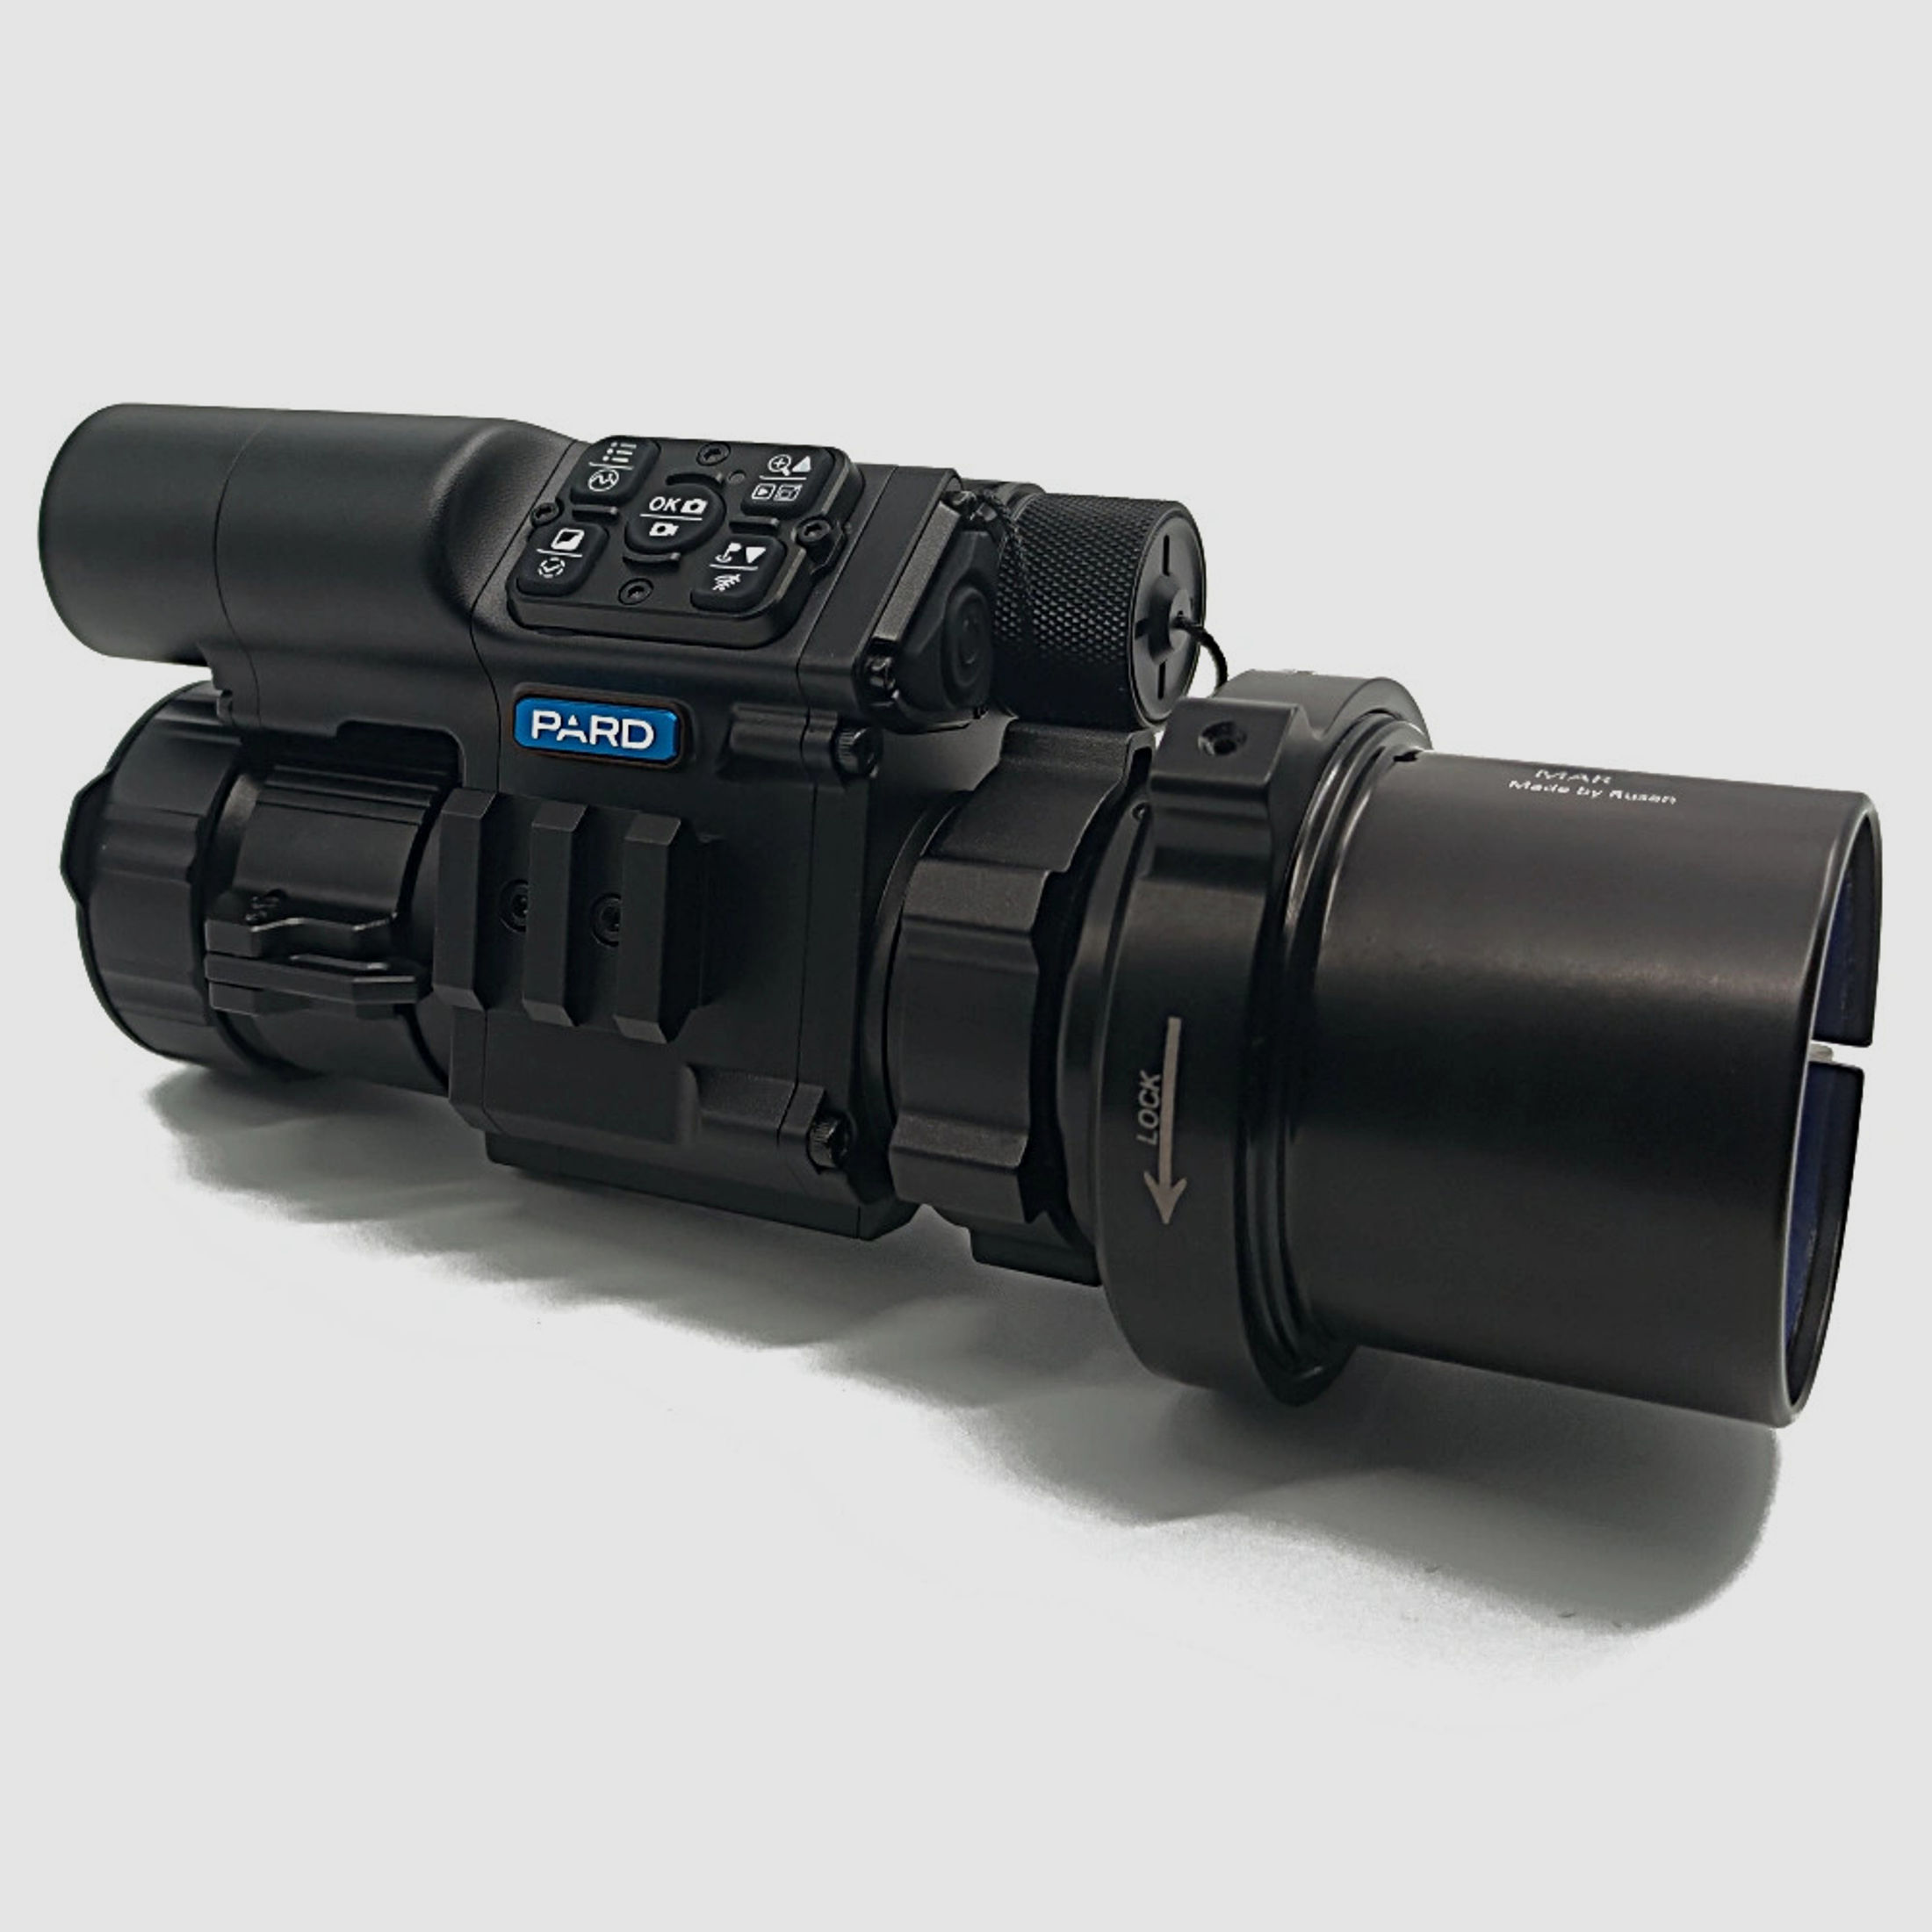 PARD FD1 Nachtsicht 3 in 1 Vorsatz, Monokular & Zielfernrohr - 850 nm mit LRF 51 mm RUSAN MAR + RUSAN MCR